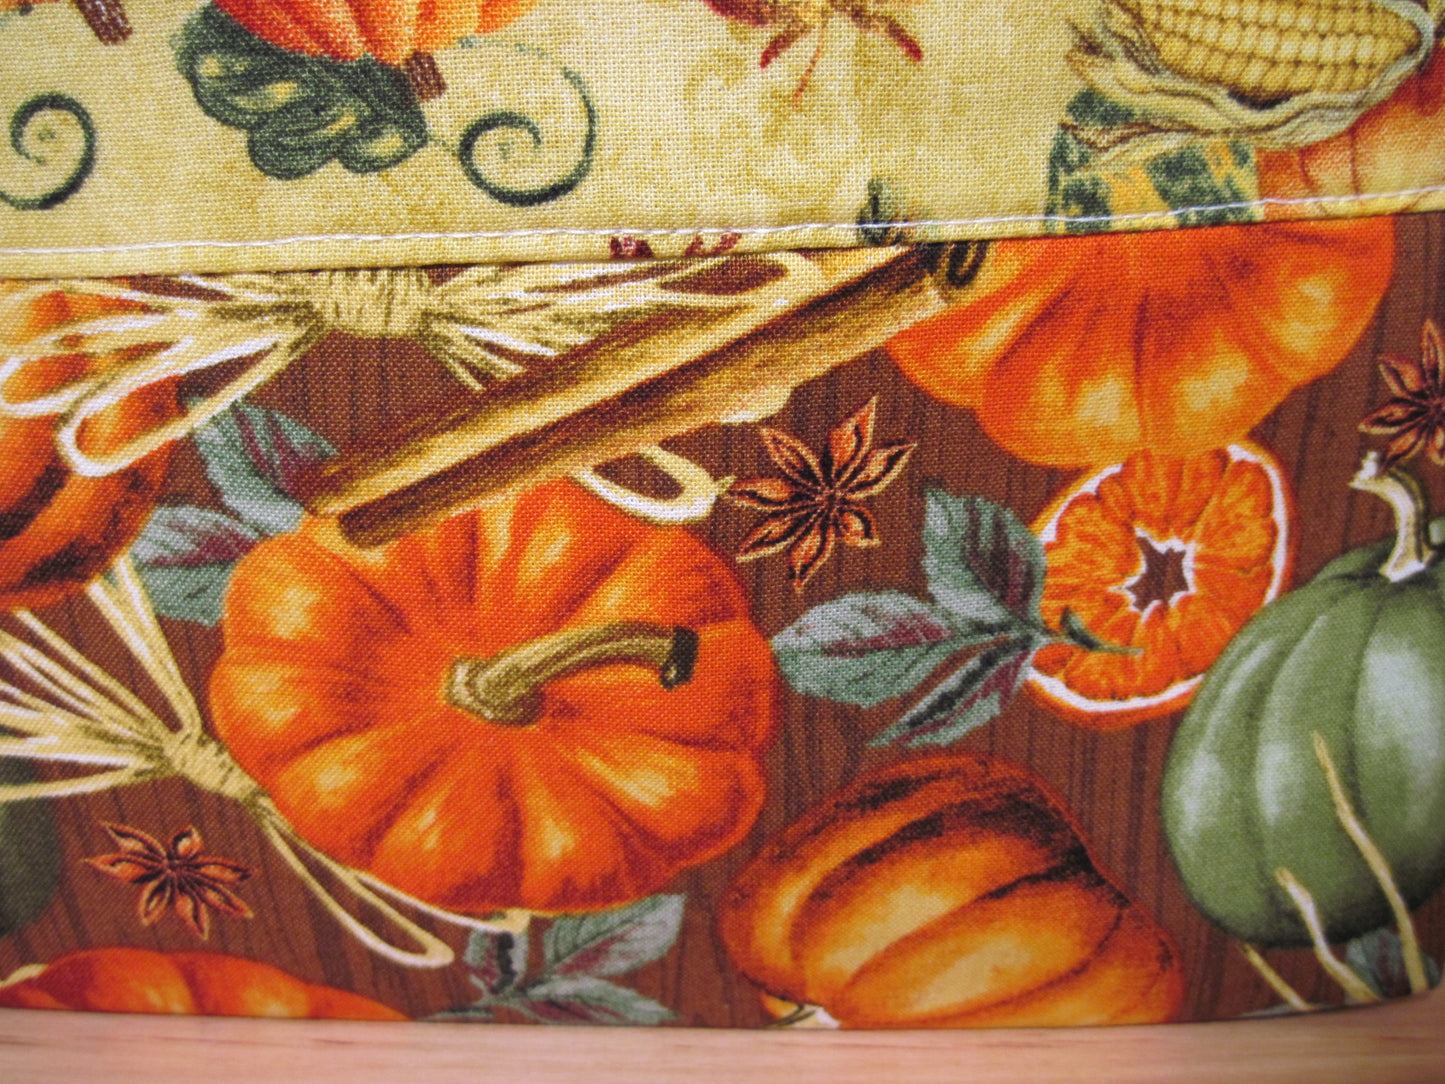 Medium Pumpkins & Leaves with inside pocket Project bag